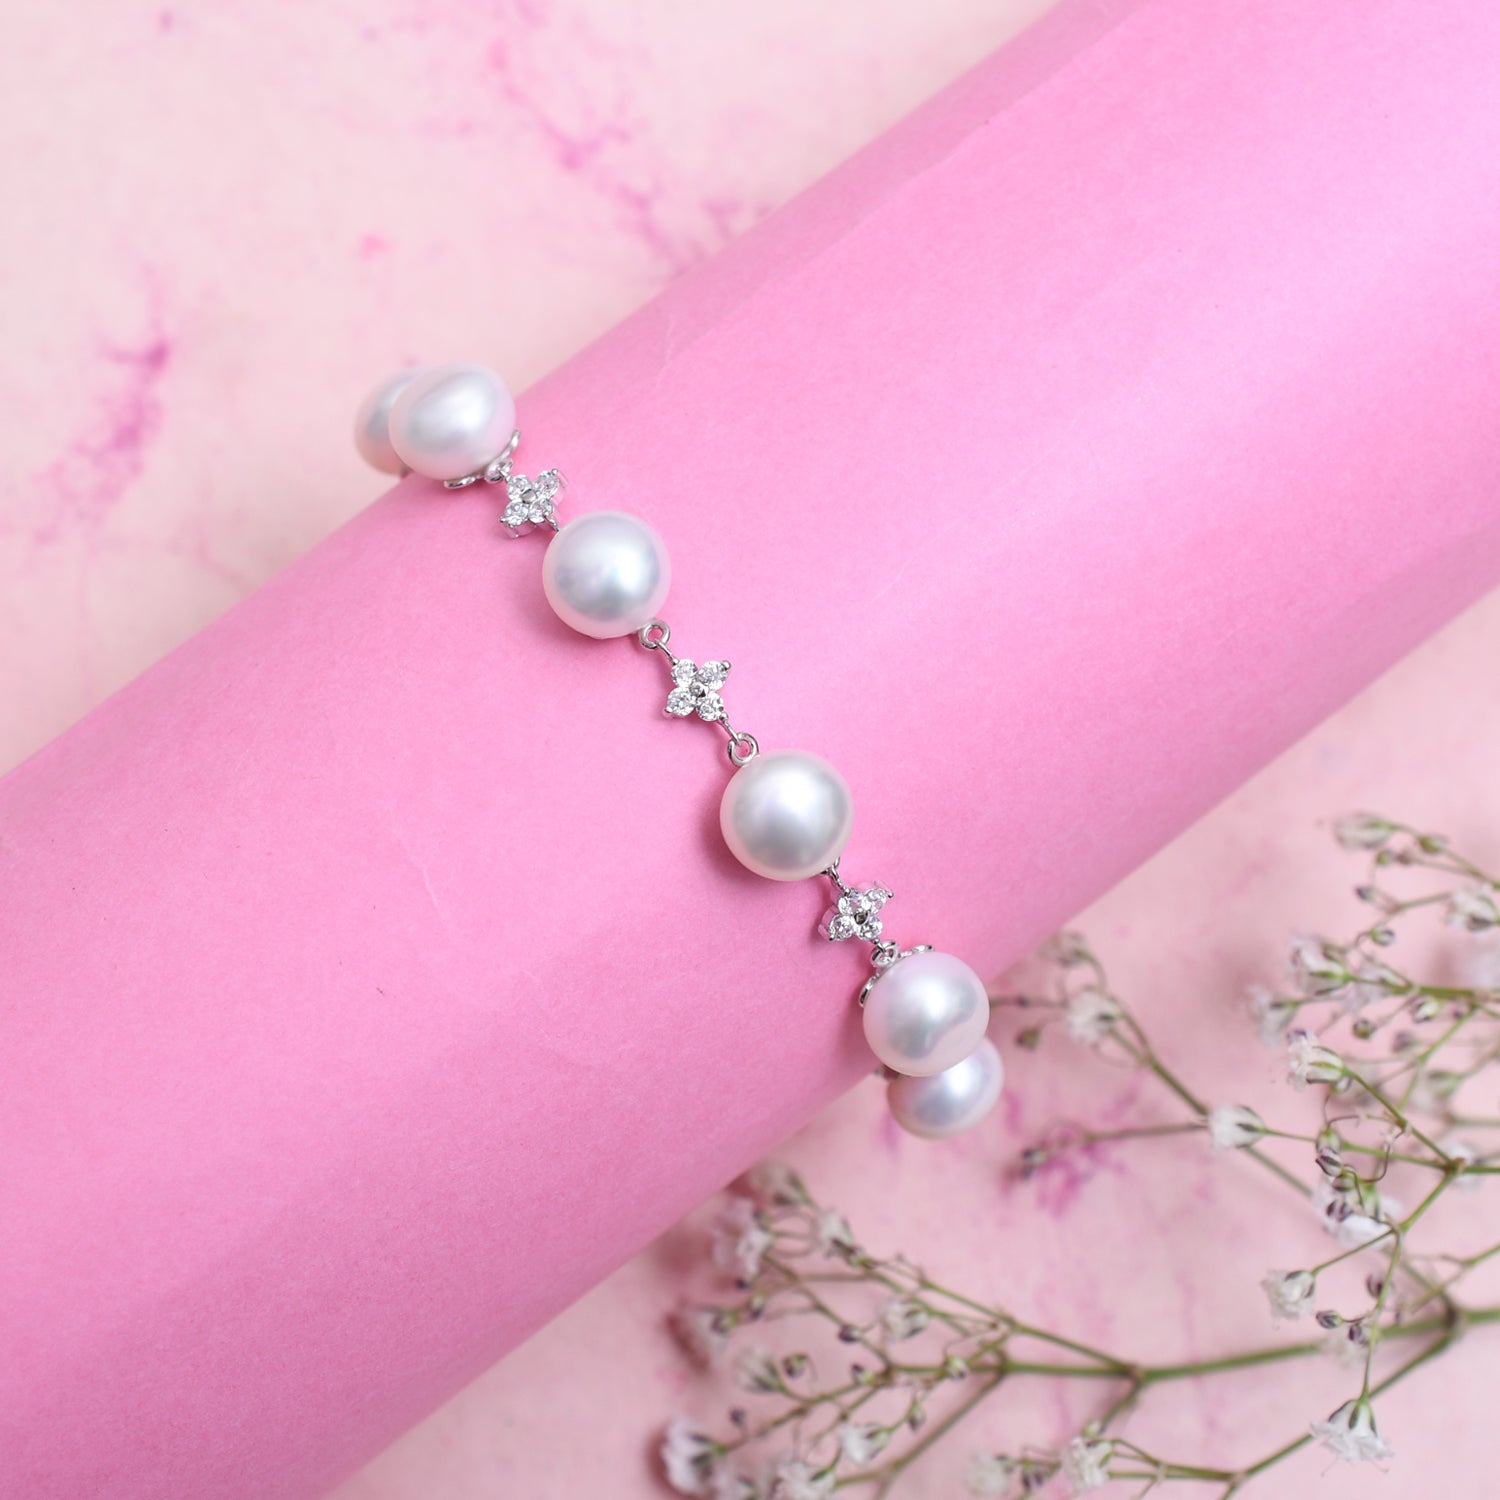 Silver Sparkling Nine Pearl Bracelet